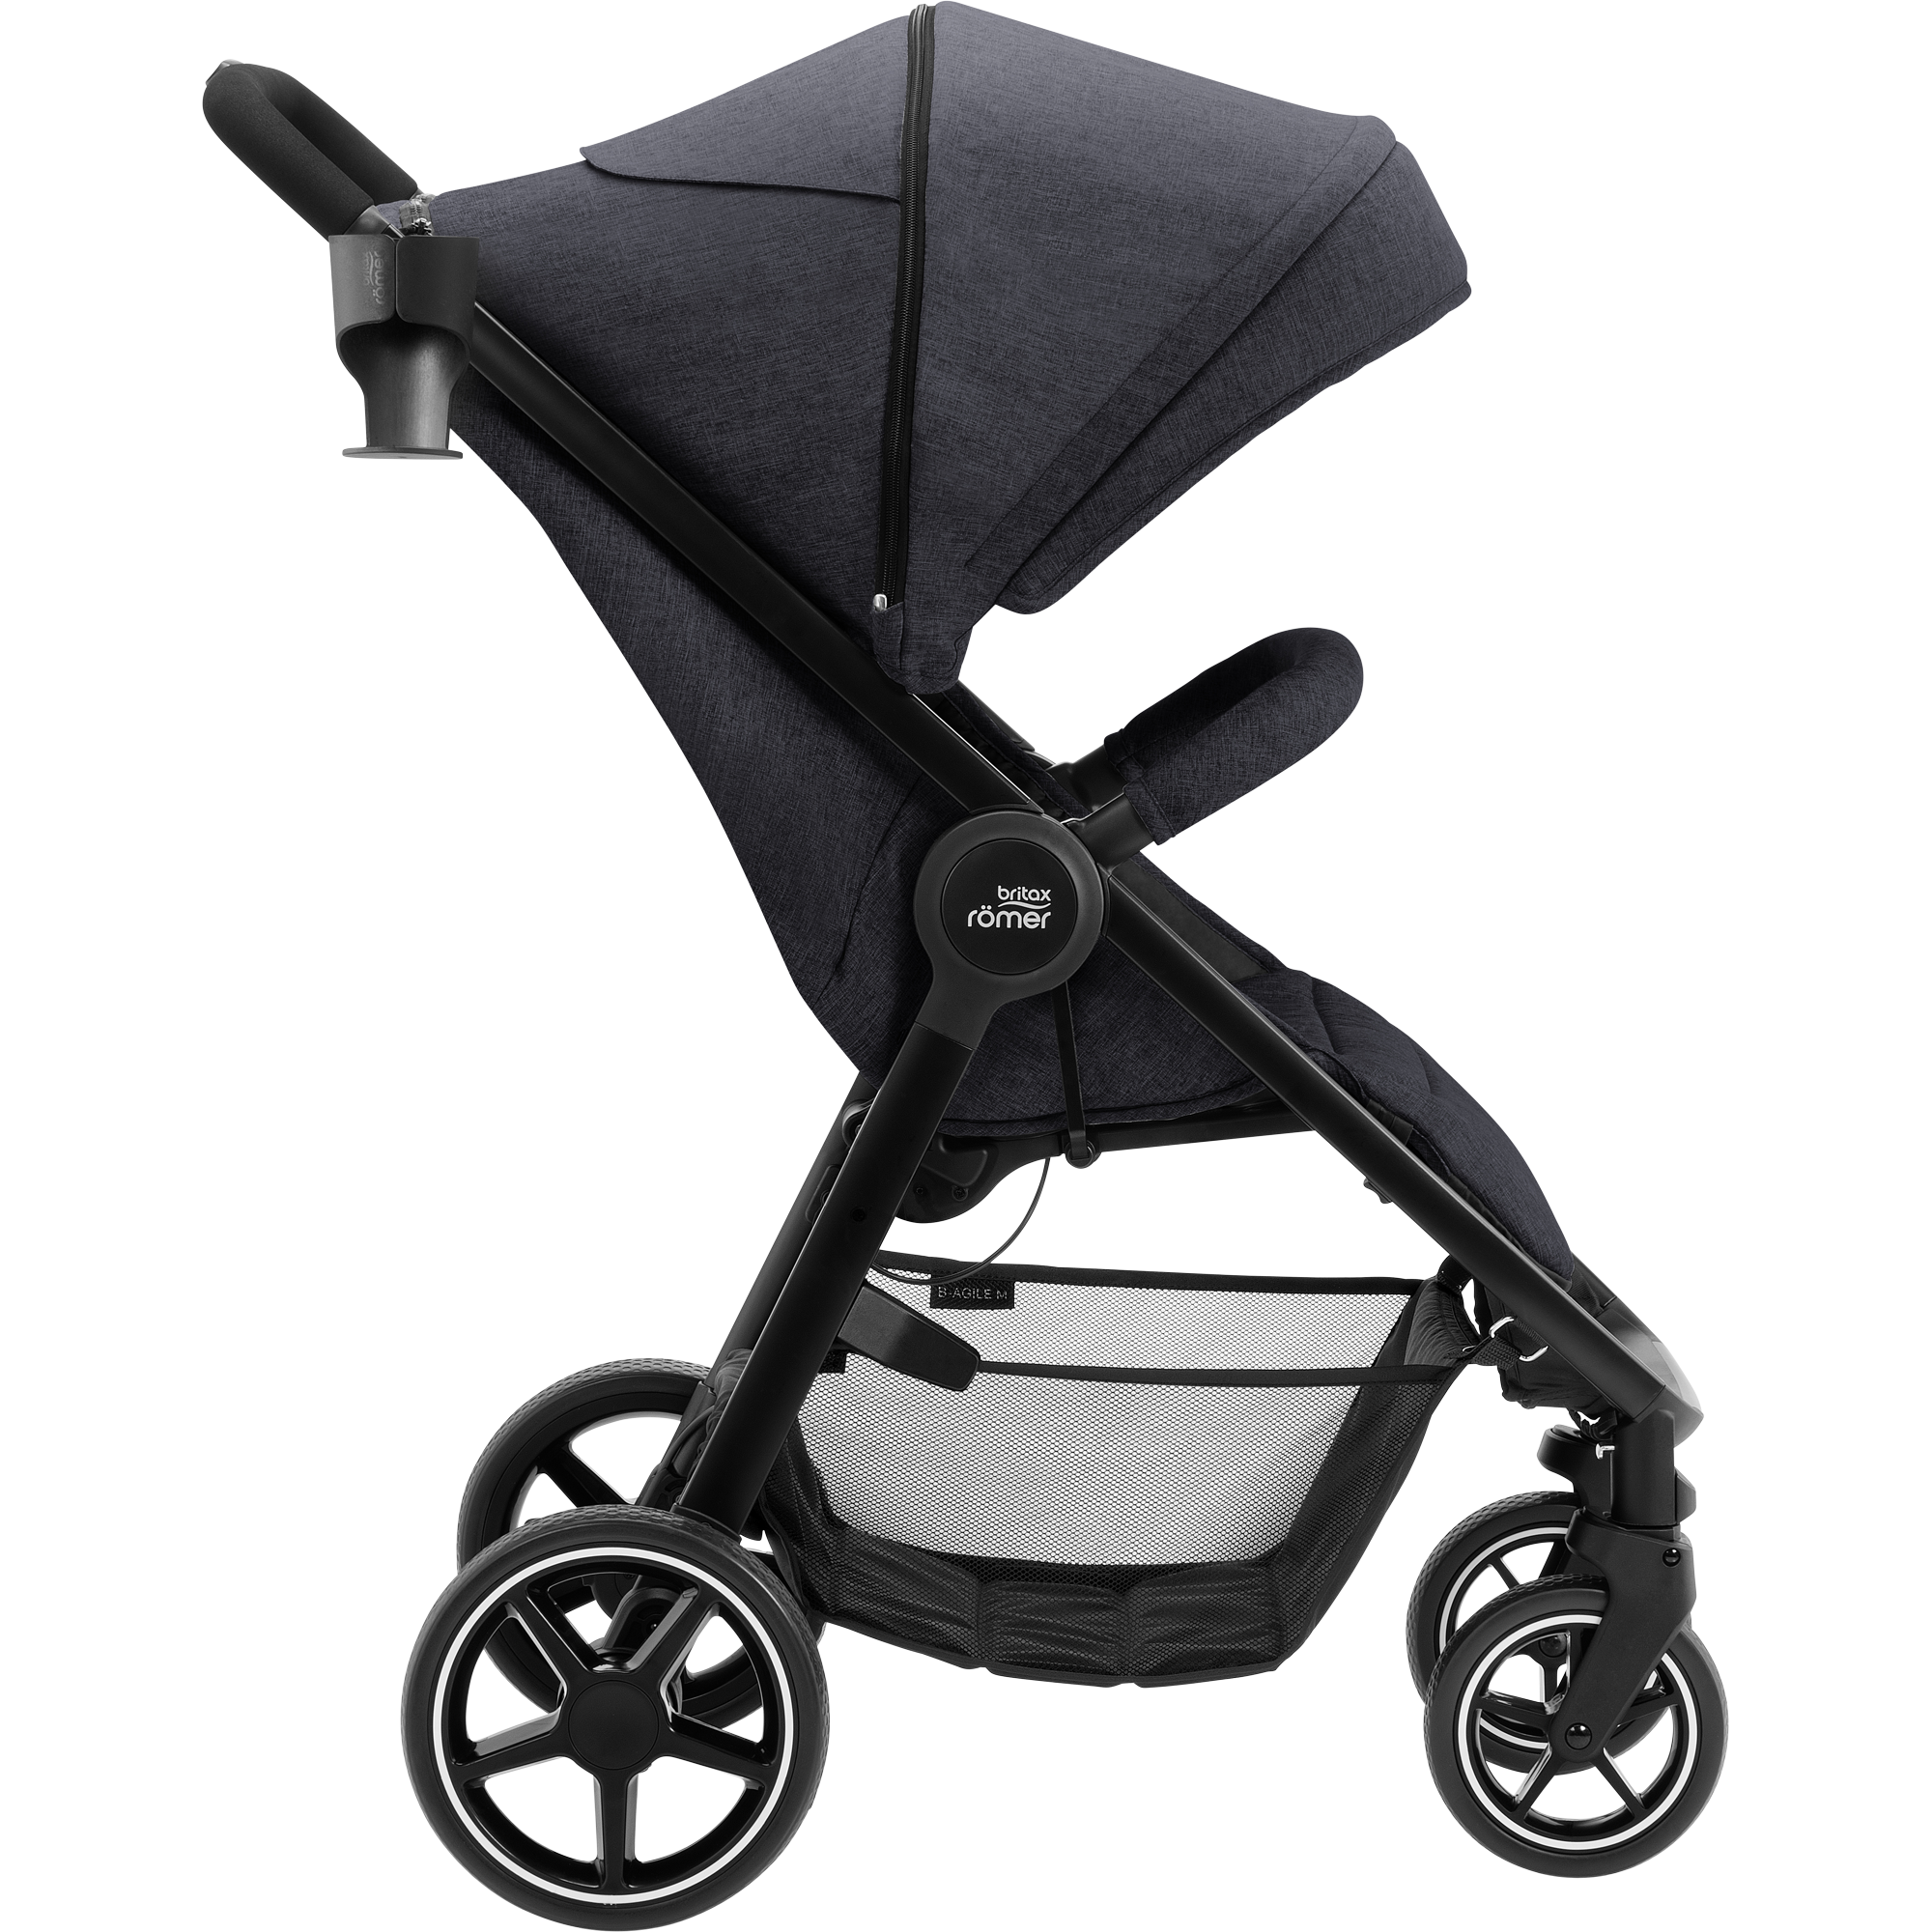 Britax B-AGILE 4 wózek stroller pushchair Kinderwagen from birth to 15 kg 